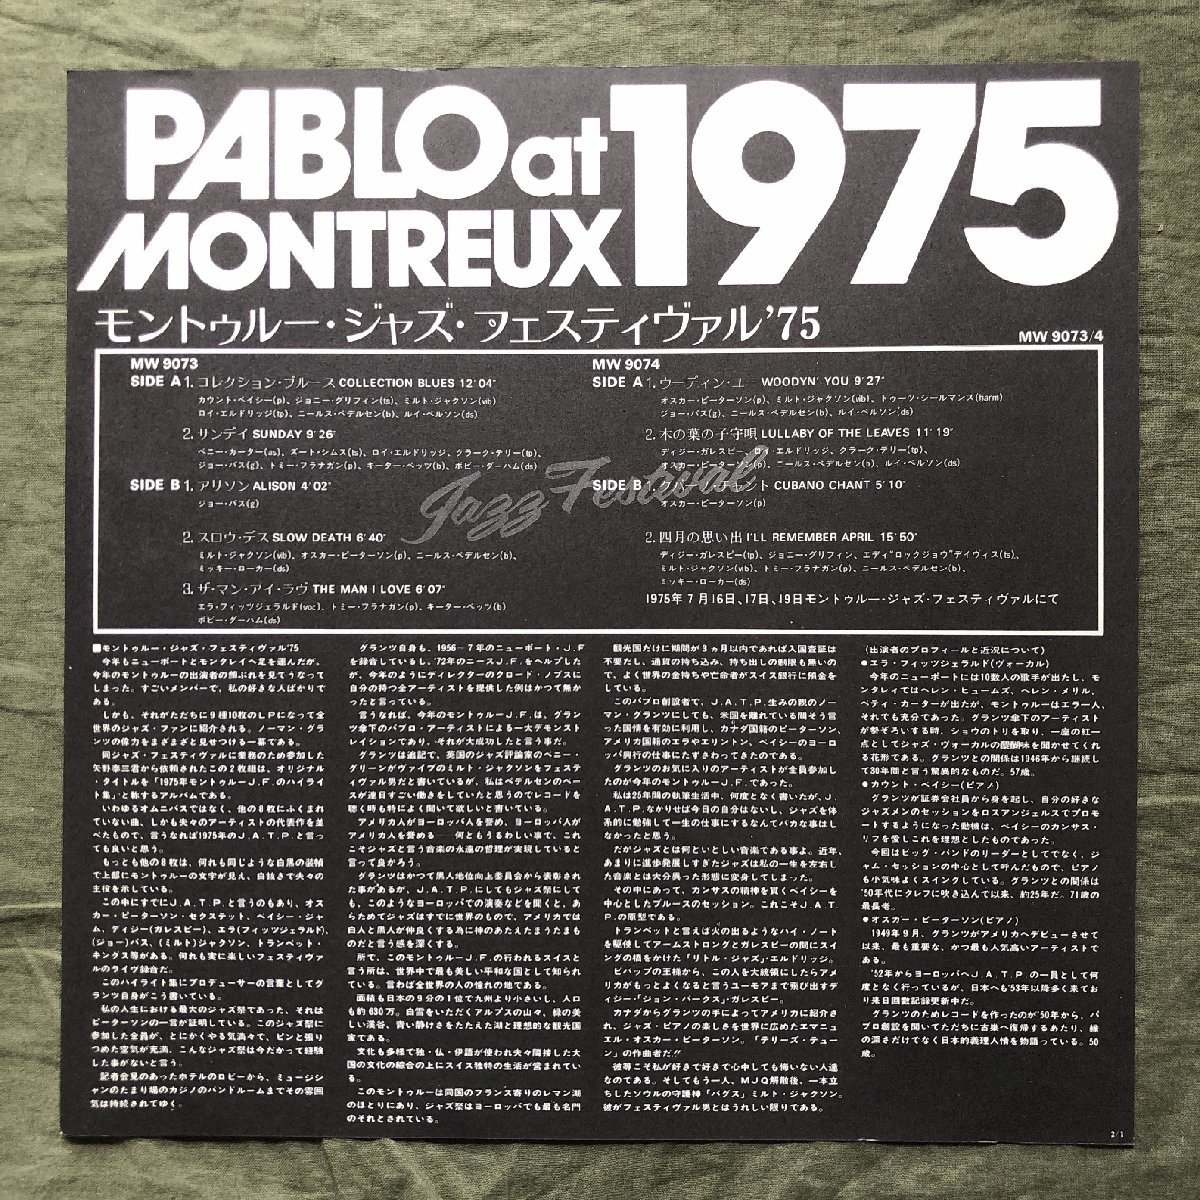 傷なし美盤 美ジャケ 新品並み 1976年 国内盤 2枚組LPレコード The Montreux Collection 帯付 Dizzy Gillespie,Oscar Peterson,Count Basie_画像6